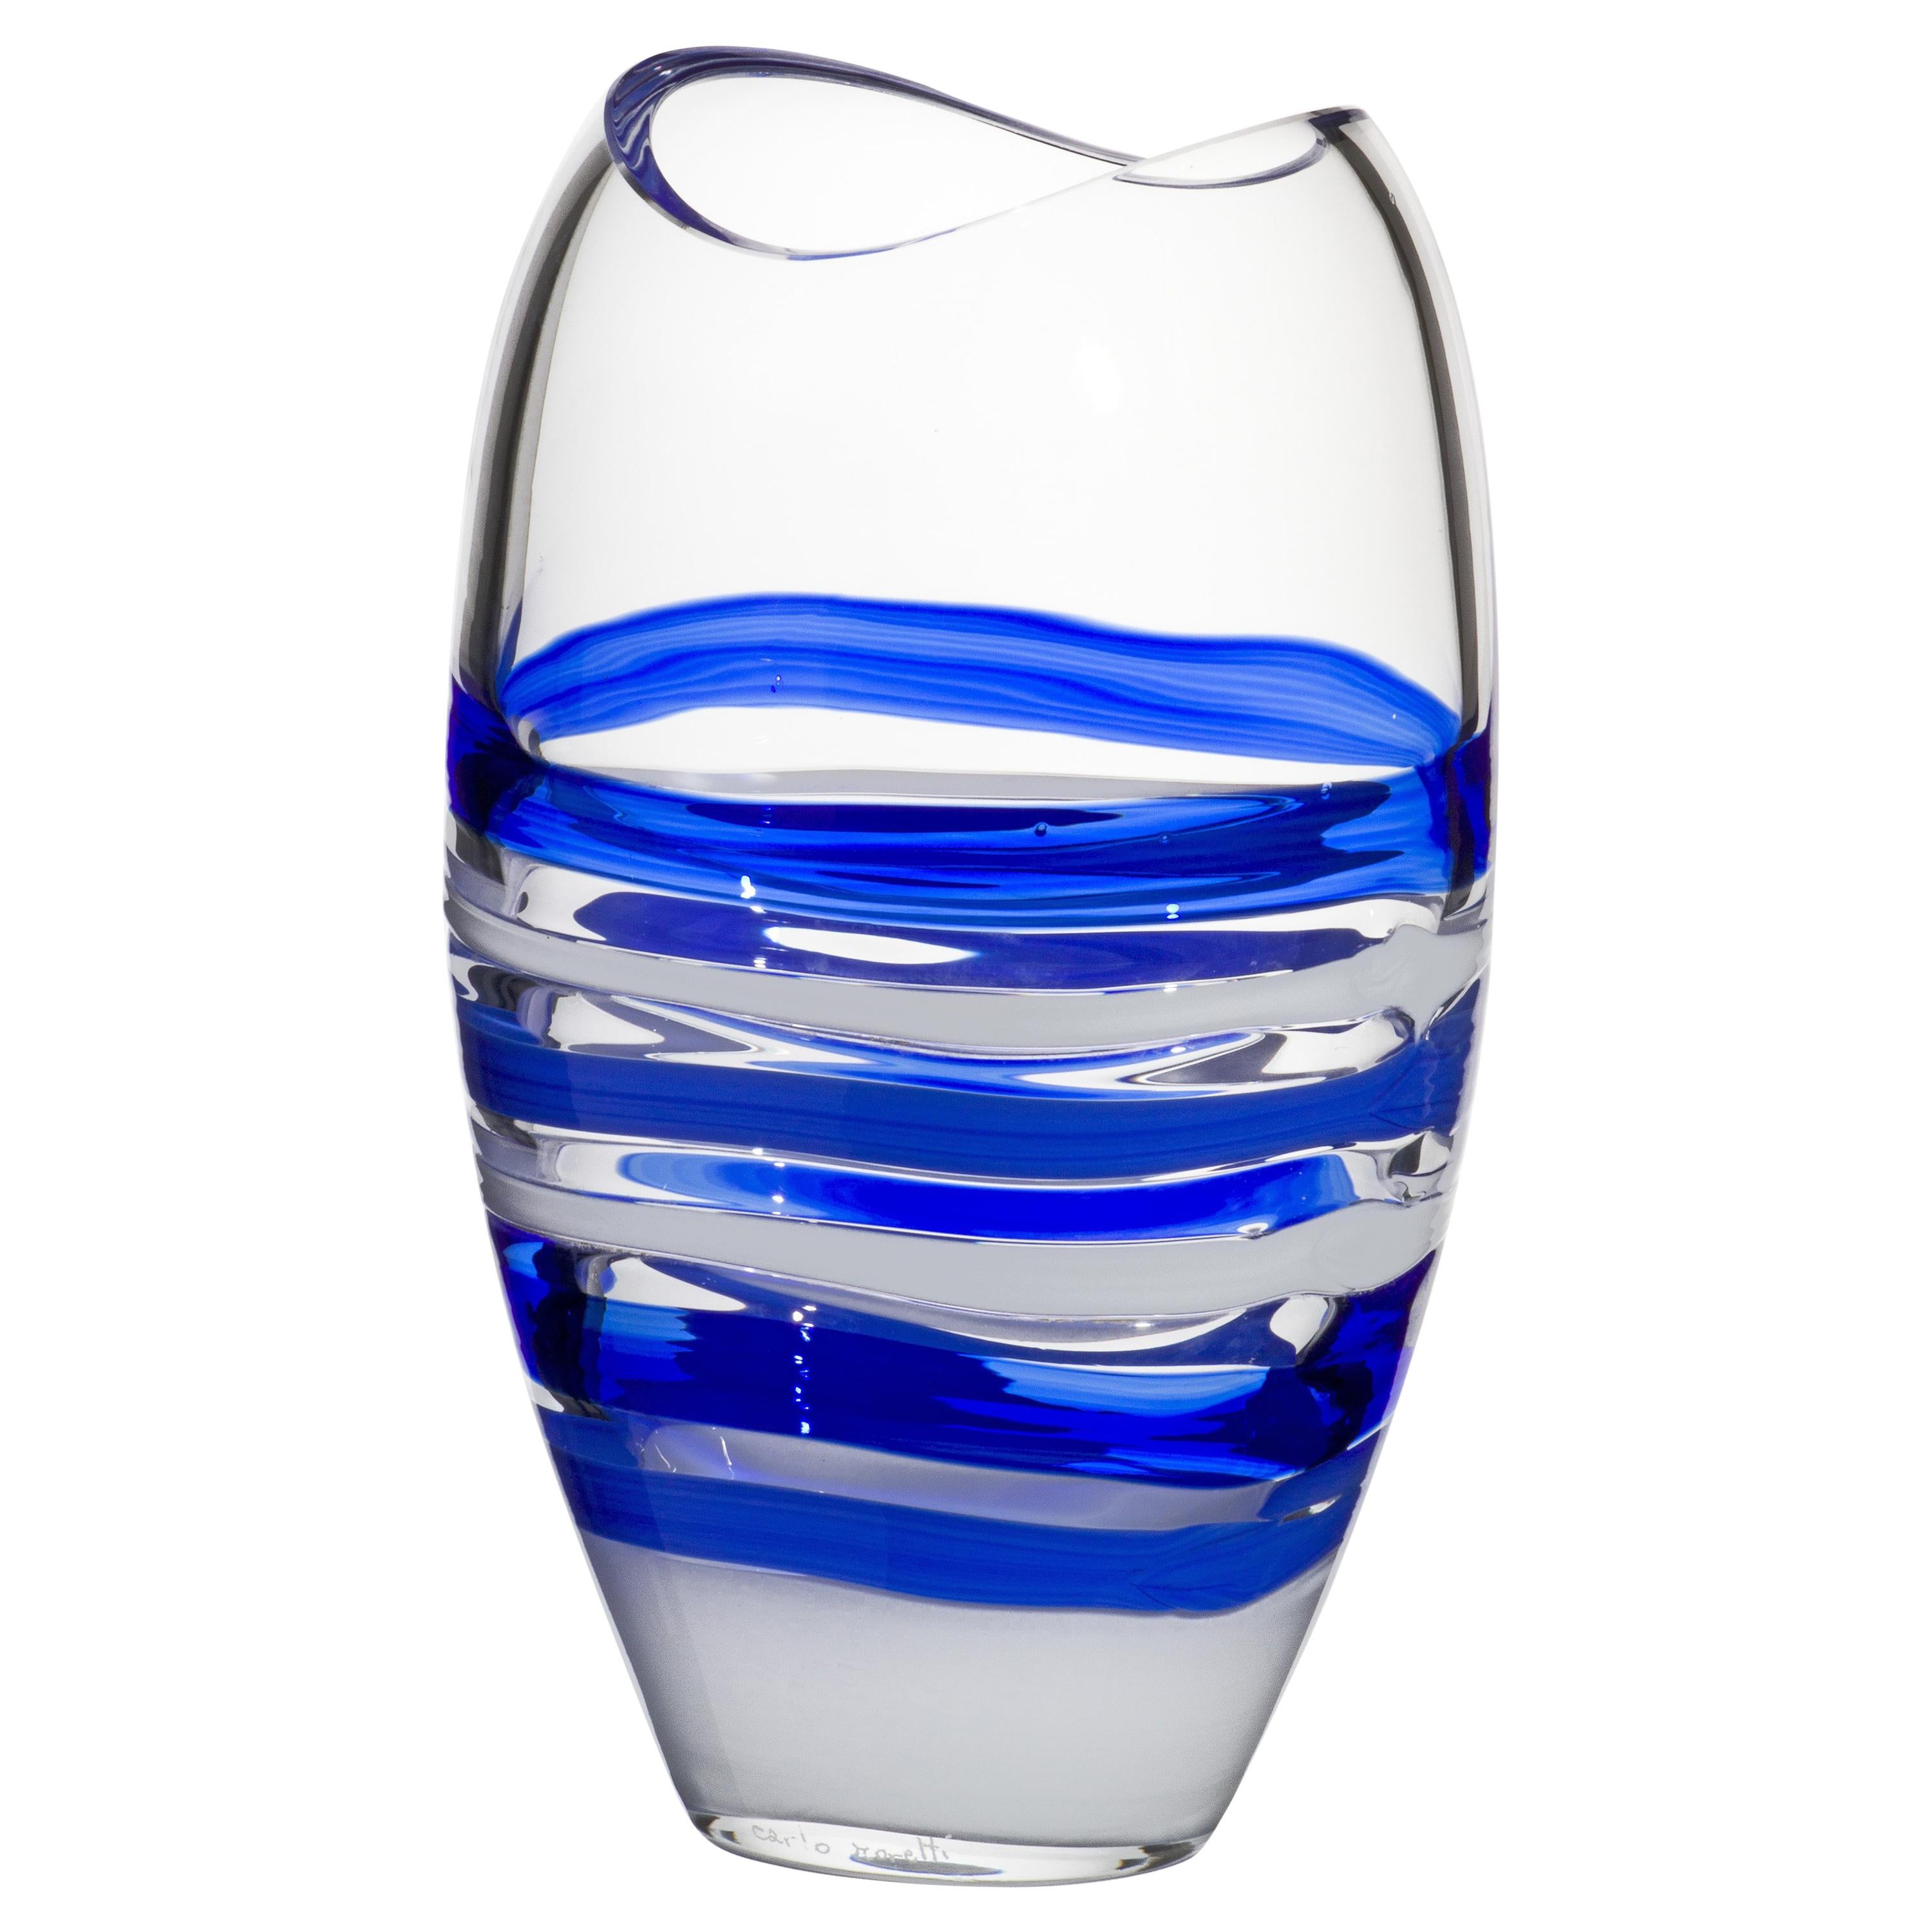 Die blau-weiße Ellisse-Vase von Carlo Moretti